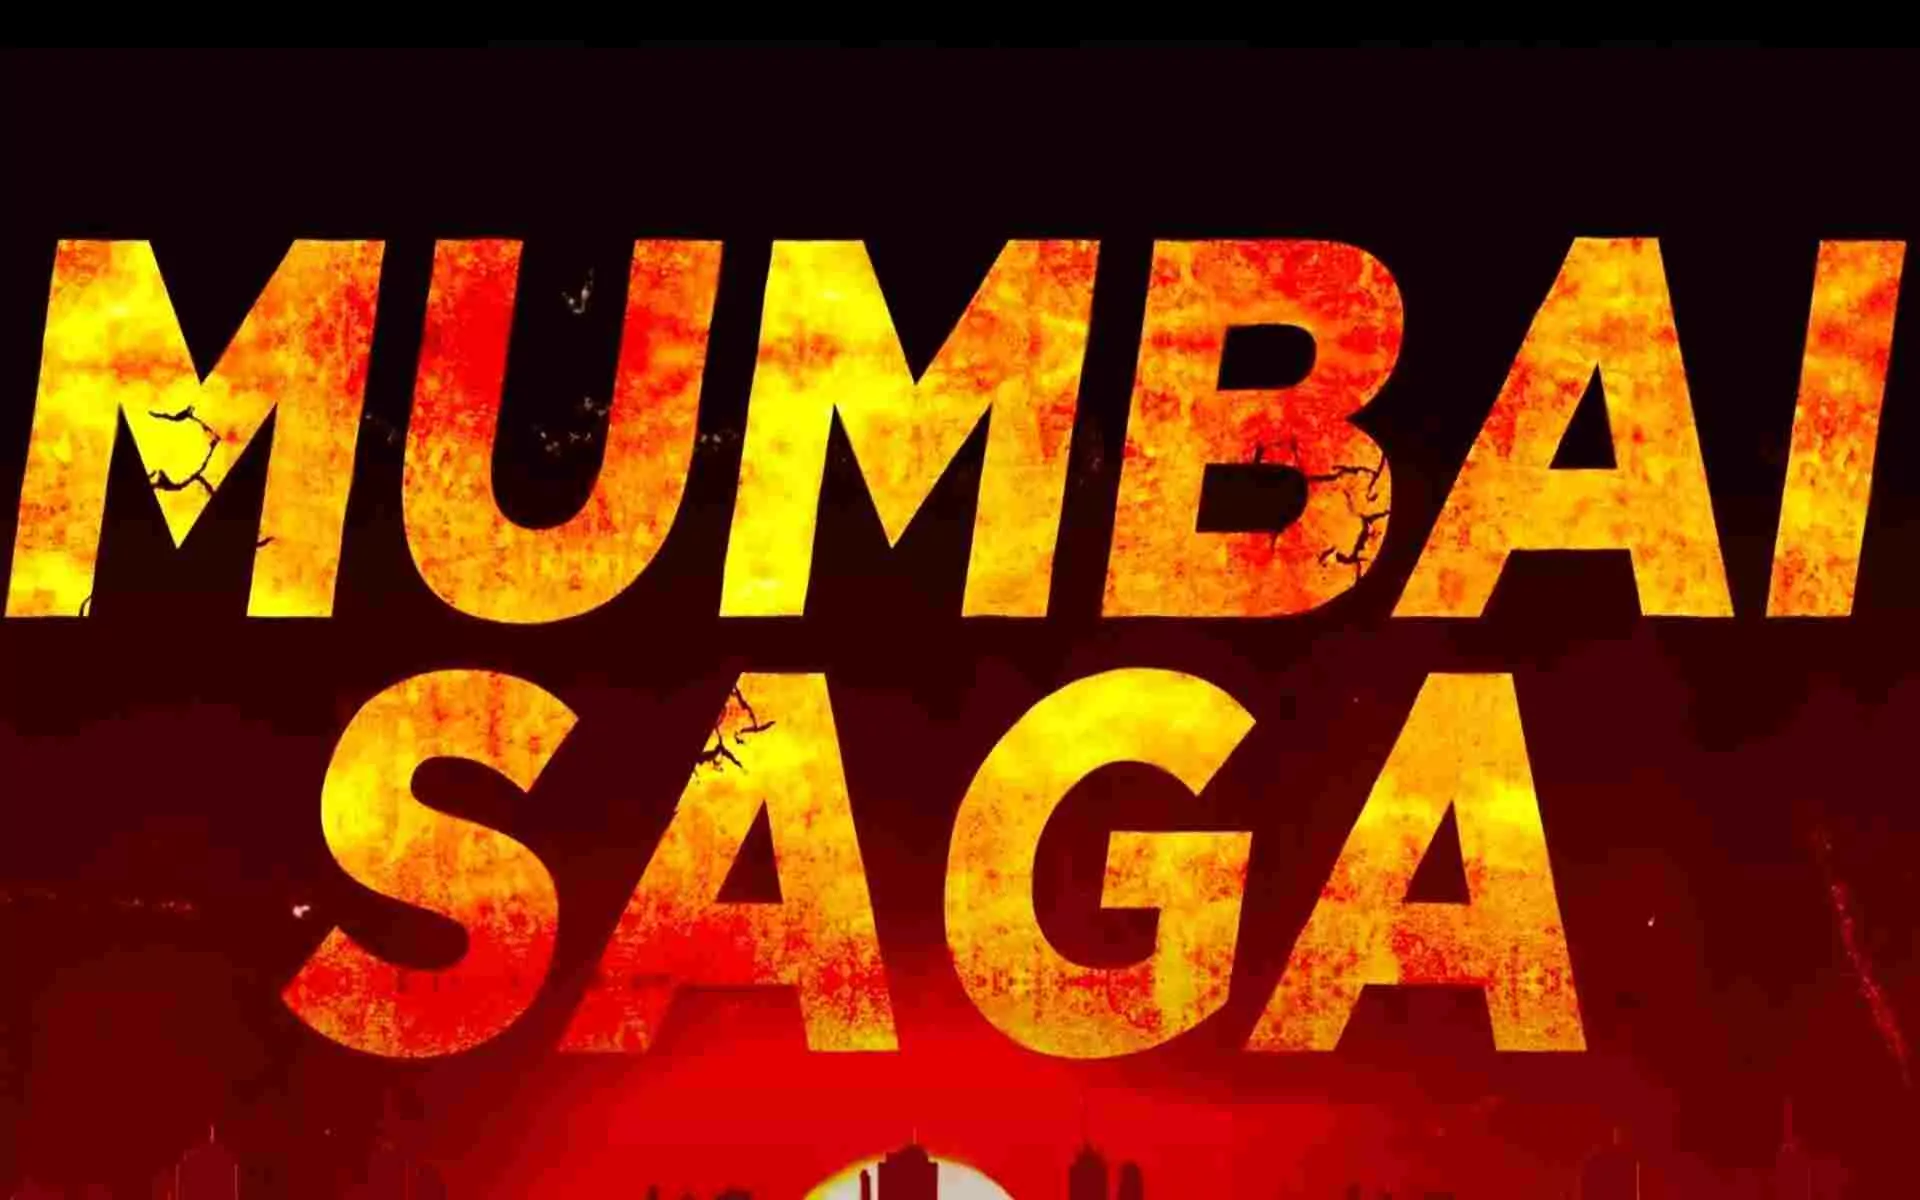 Mumbai Saga is now streaming officially on Amazon Prime Video